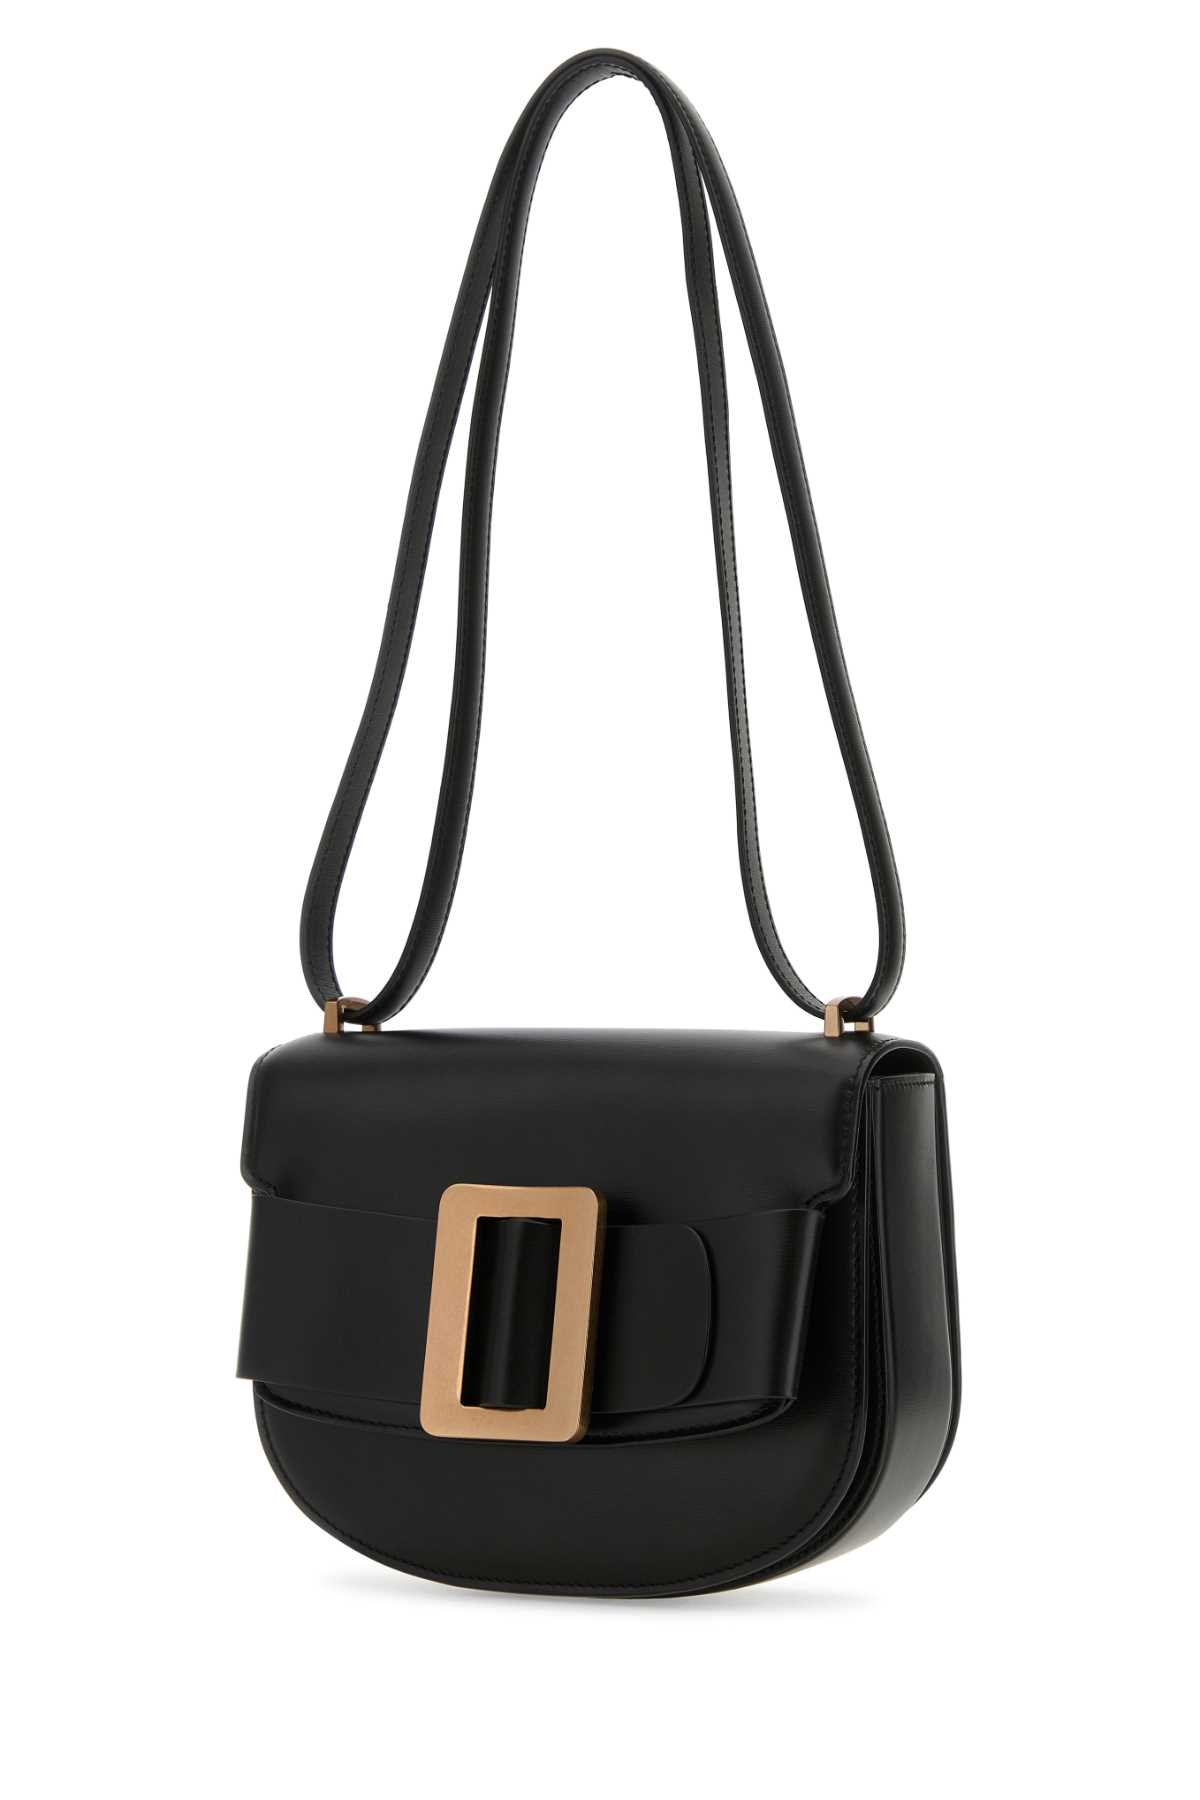 Shop Boyy Black Leather Buckle Shoulder Bag